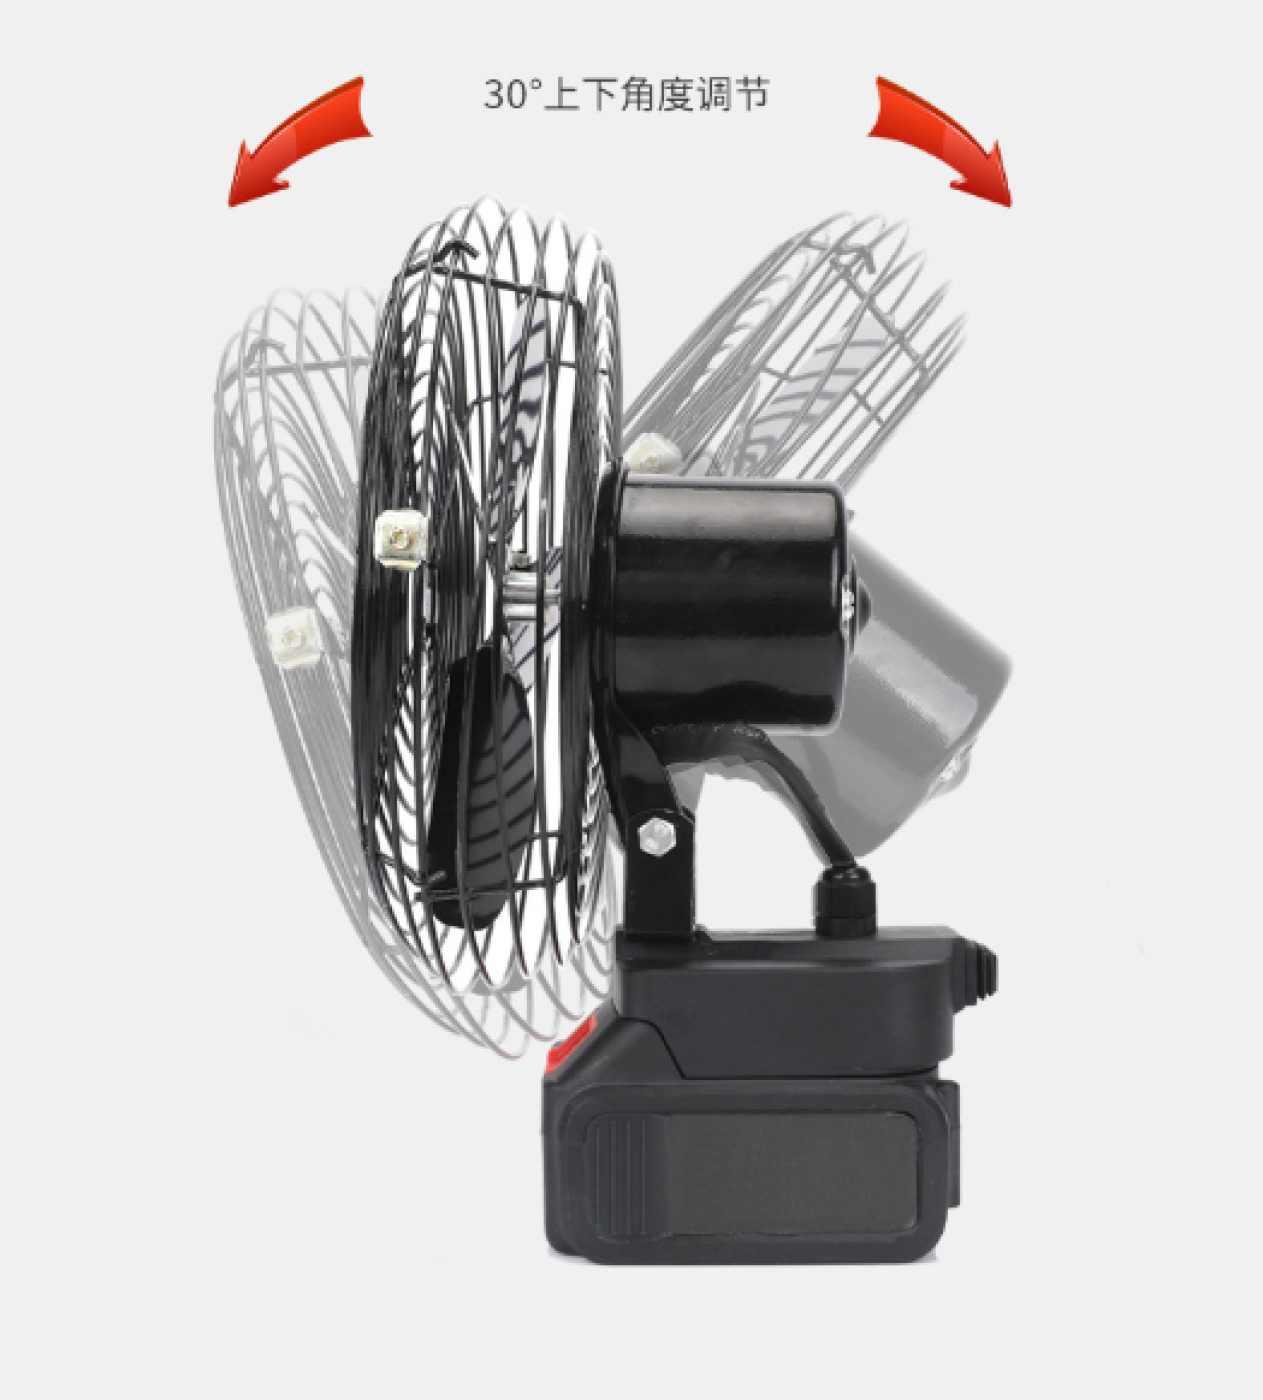 Thân quạt chạy pin Mikita 22cm - 2 Tốc độ gió - Không gồm Pin + Sạc